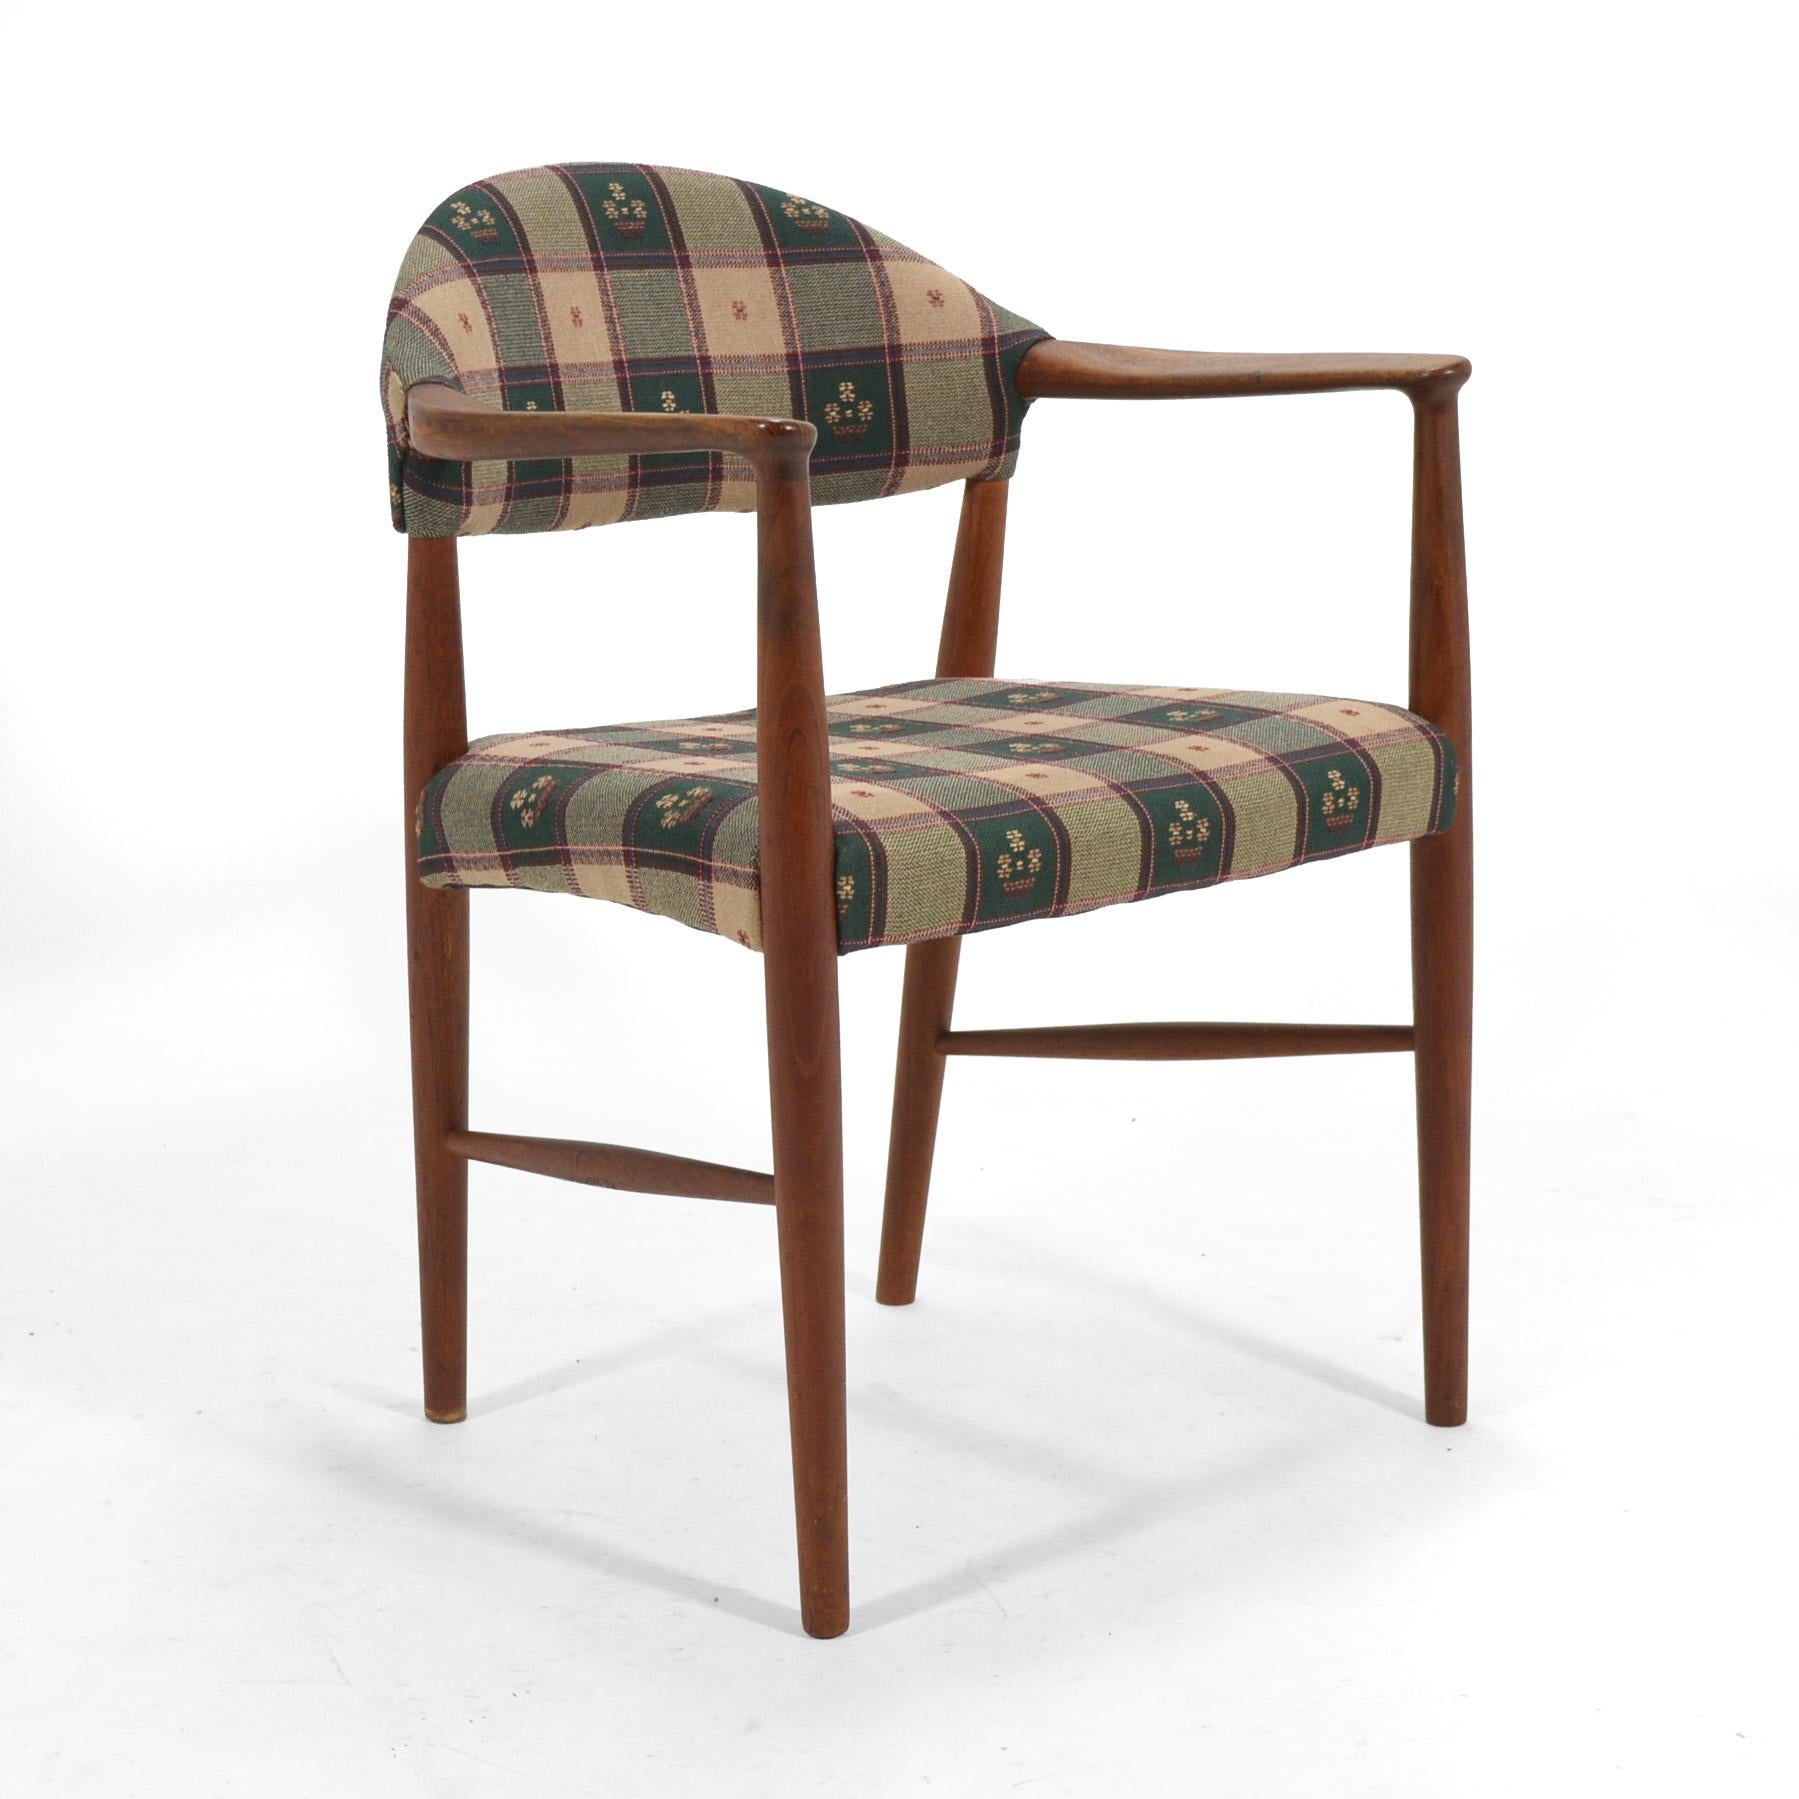 Der 1955 von Kurt Olsen für Slagelse Møbelværk entworfene Sessel Modell 223 ist ein unaufdringliches, zeitloses Design. Der aus Teakholz gefertigte Sessel hat seine ursprüngliche, handgewebte Stoffpolsterung behalten, würde aber auch mit einem Stoff